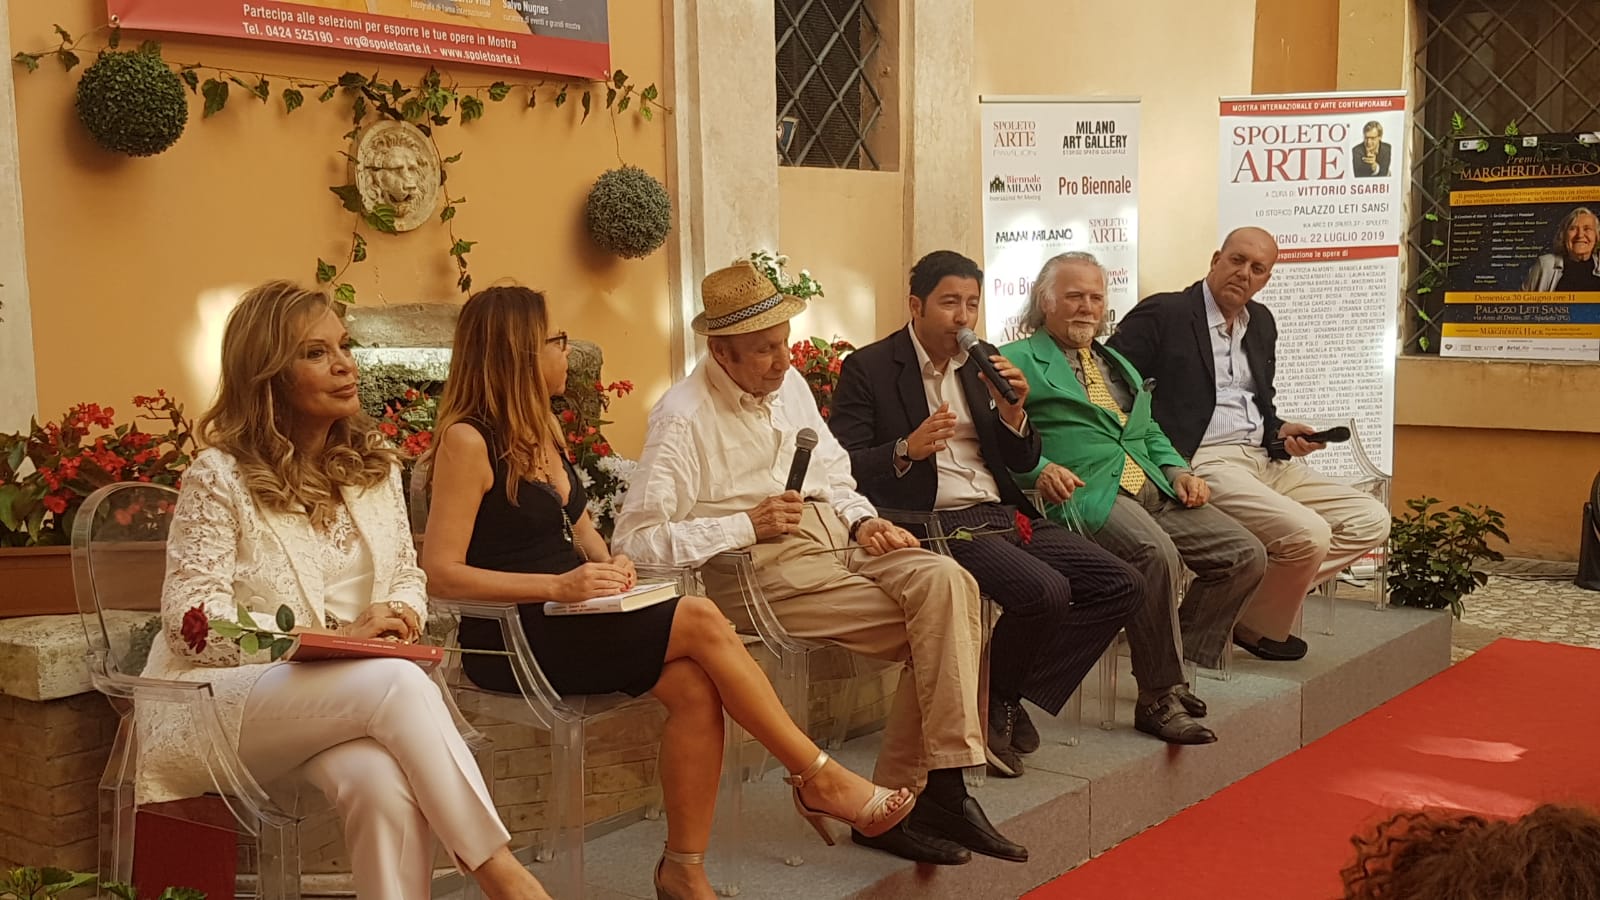 Foto 3 - Inaugurazione tra gli applausi per Spoleto Arte con Sgarbi, Alberoni e molti altri amici vip